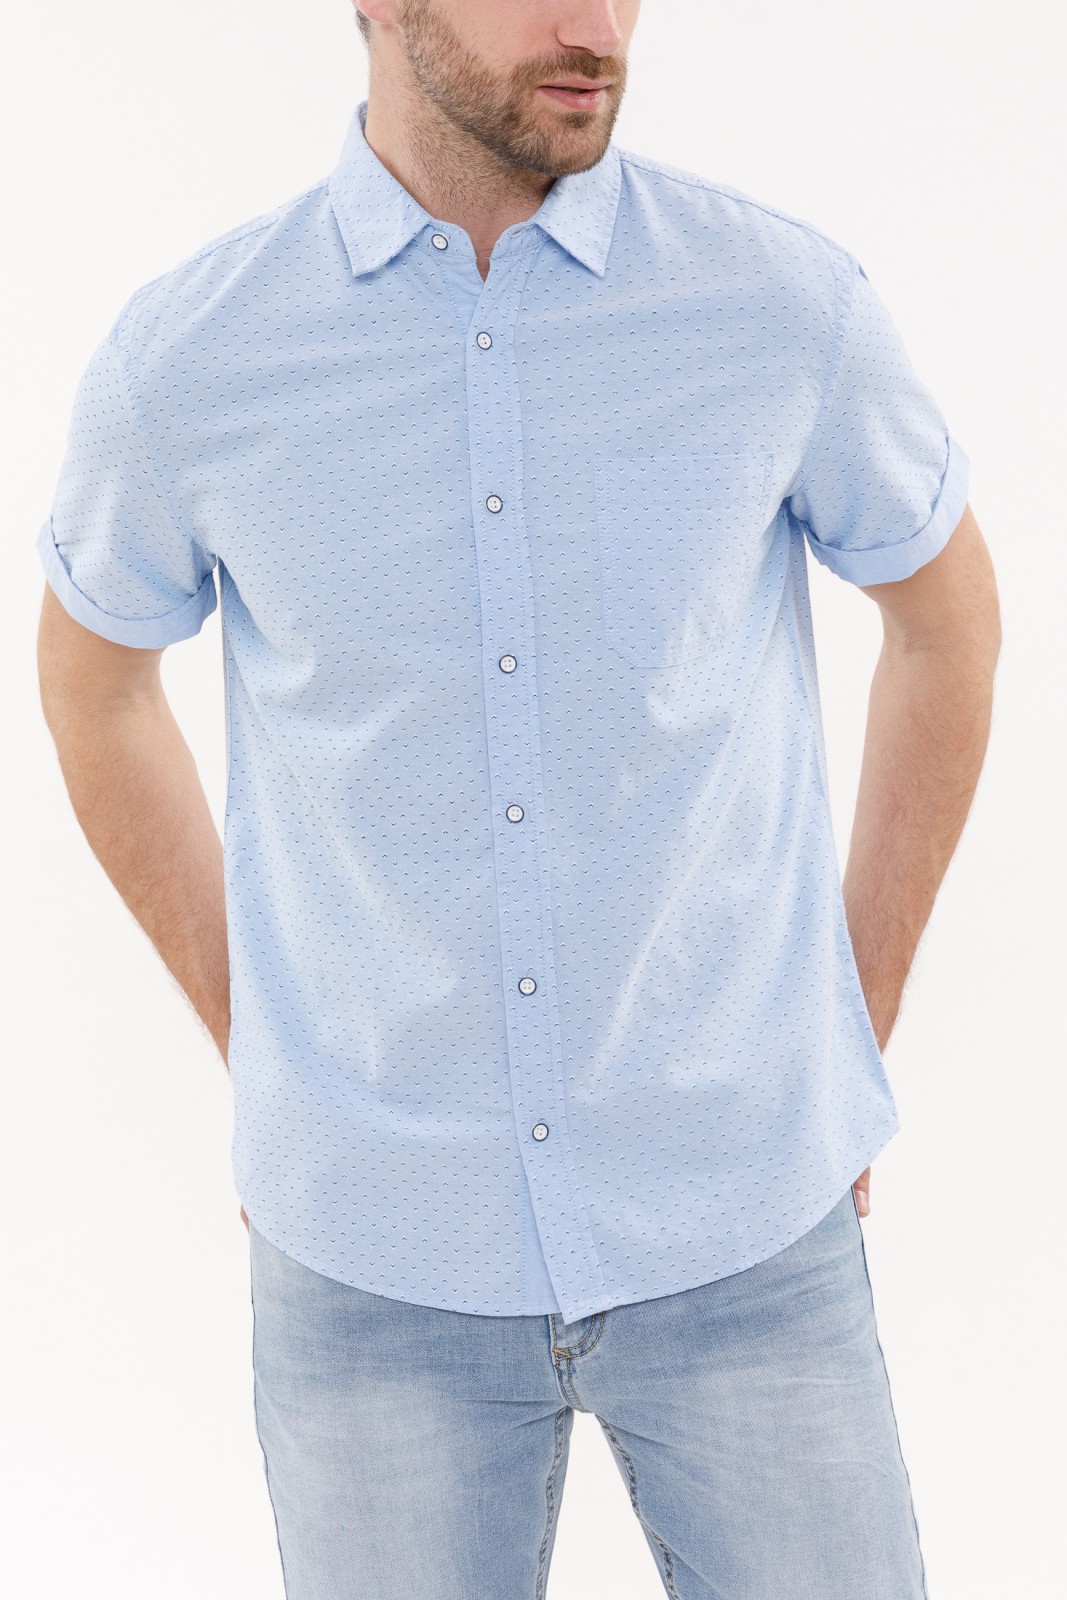 Рубашка с  короткими рукавами zolla 010232259051, цвет светло-голубой, размер S